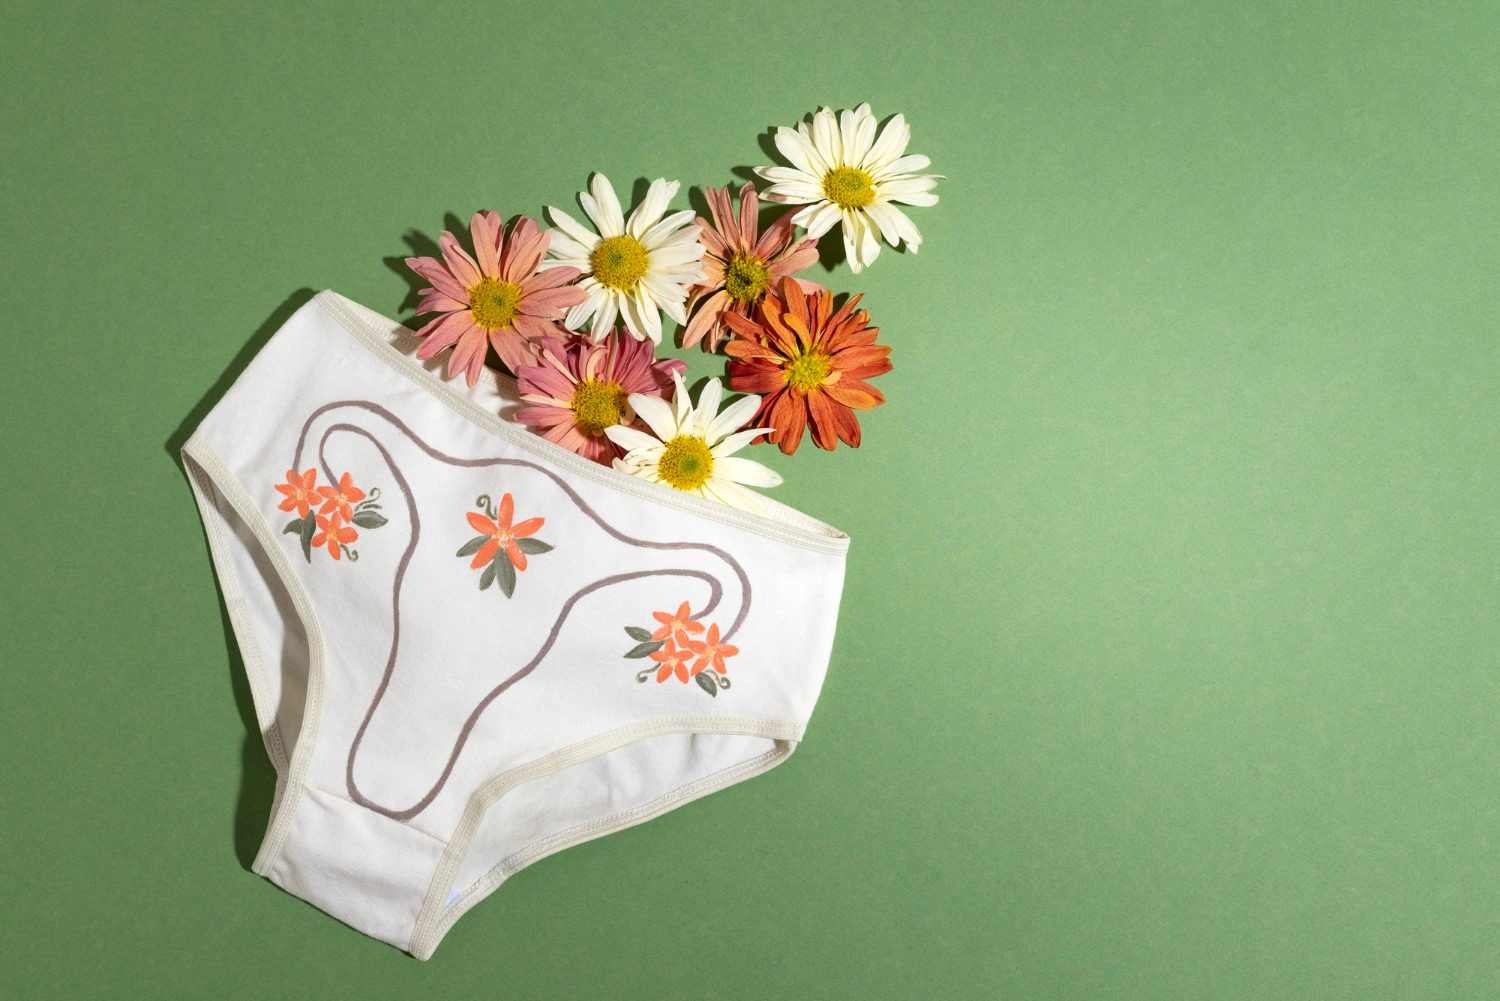 Chiloții Menstruali: O Alternativă Confortabilă și Ecologică pentru Gestionarea Menstruației